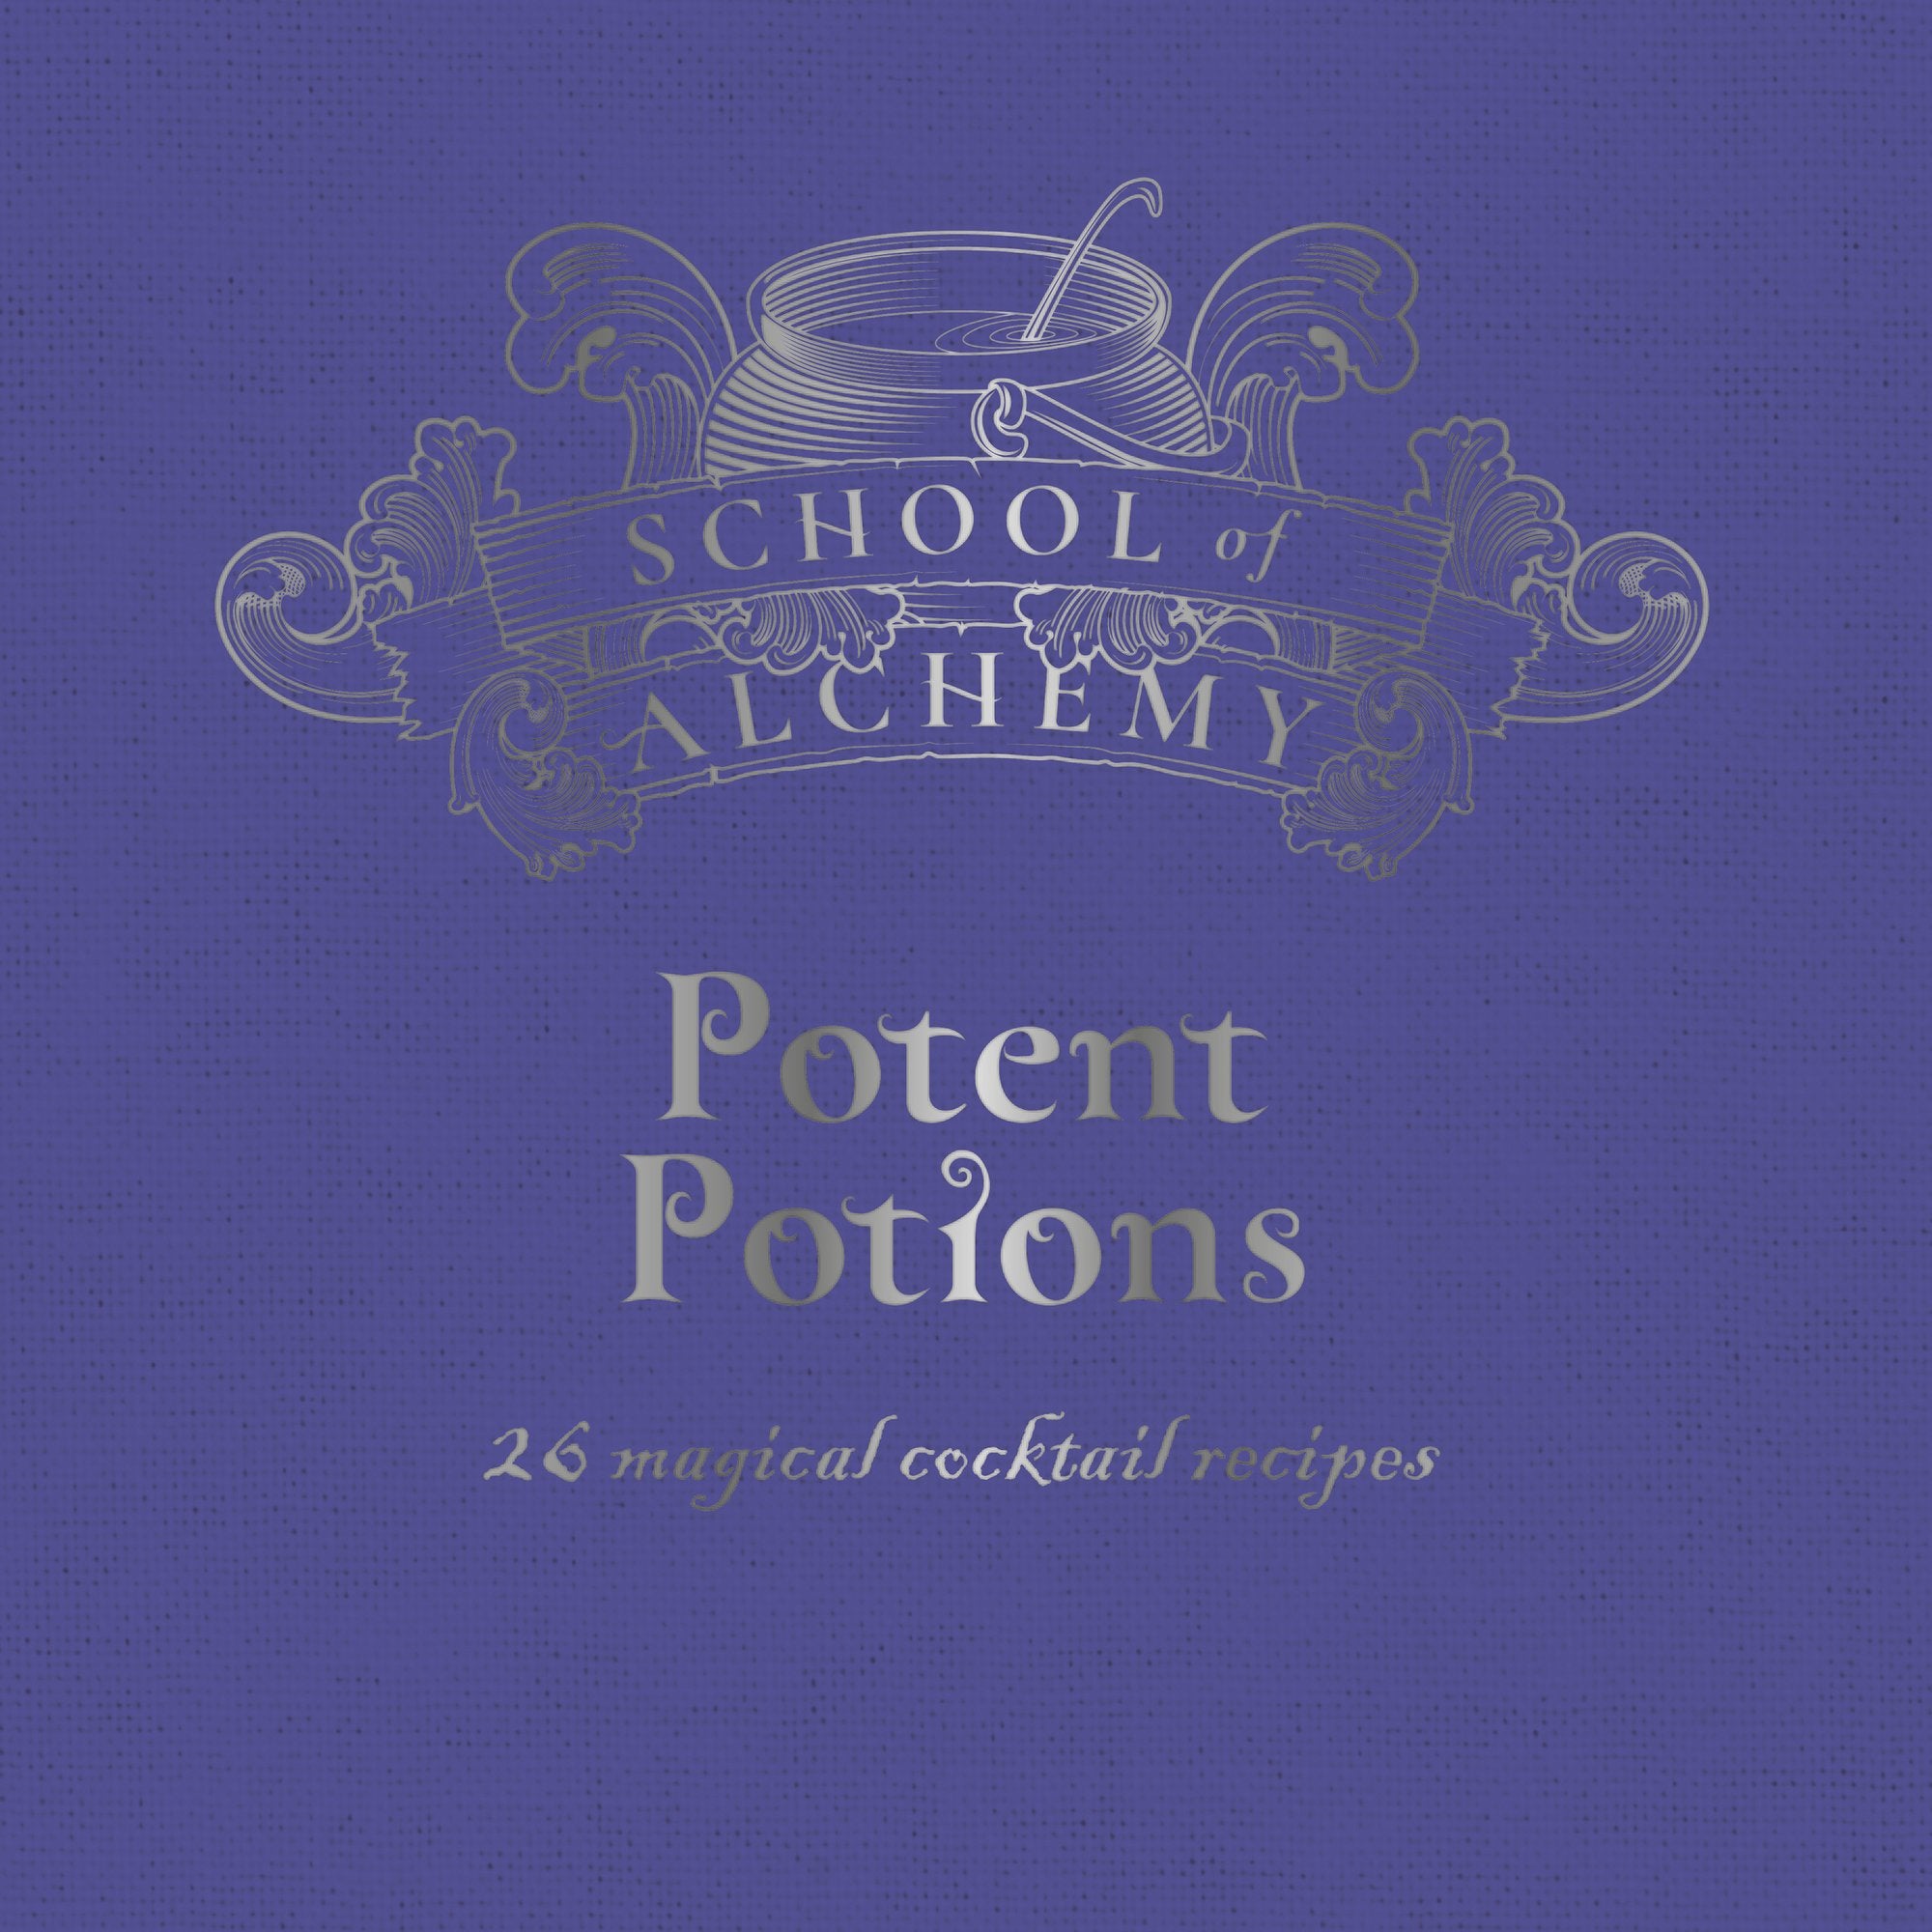 School of Alchemy: Potent Potions